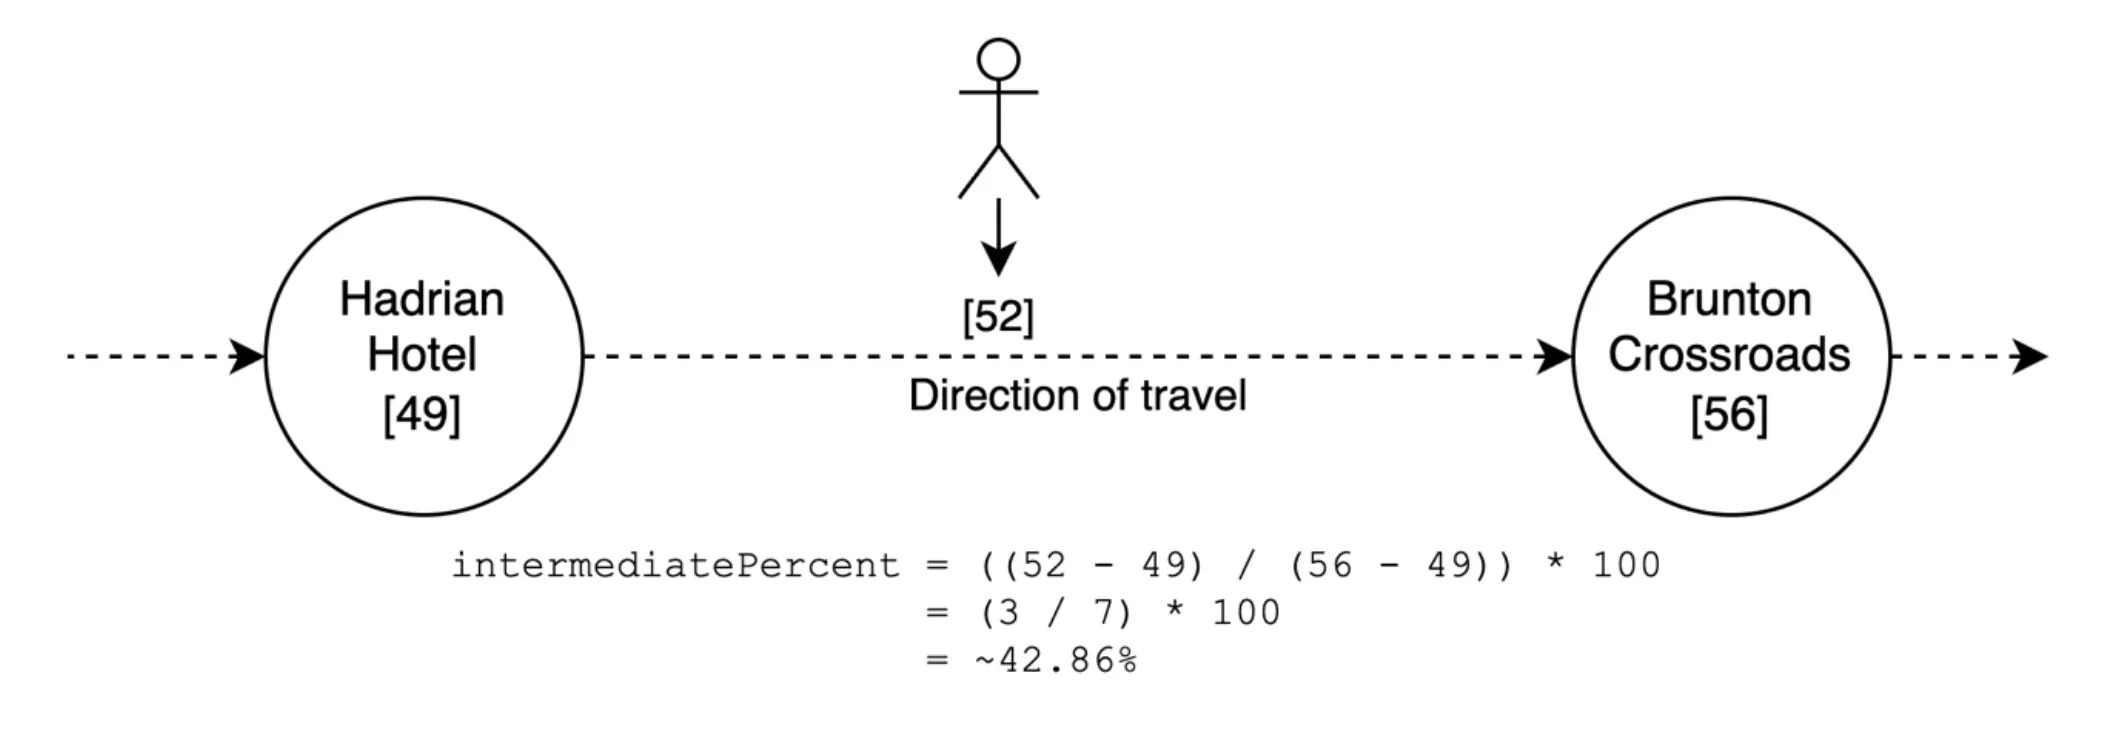 Diagram for calculating a intermediate percentage figure